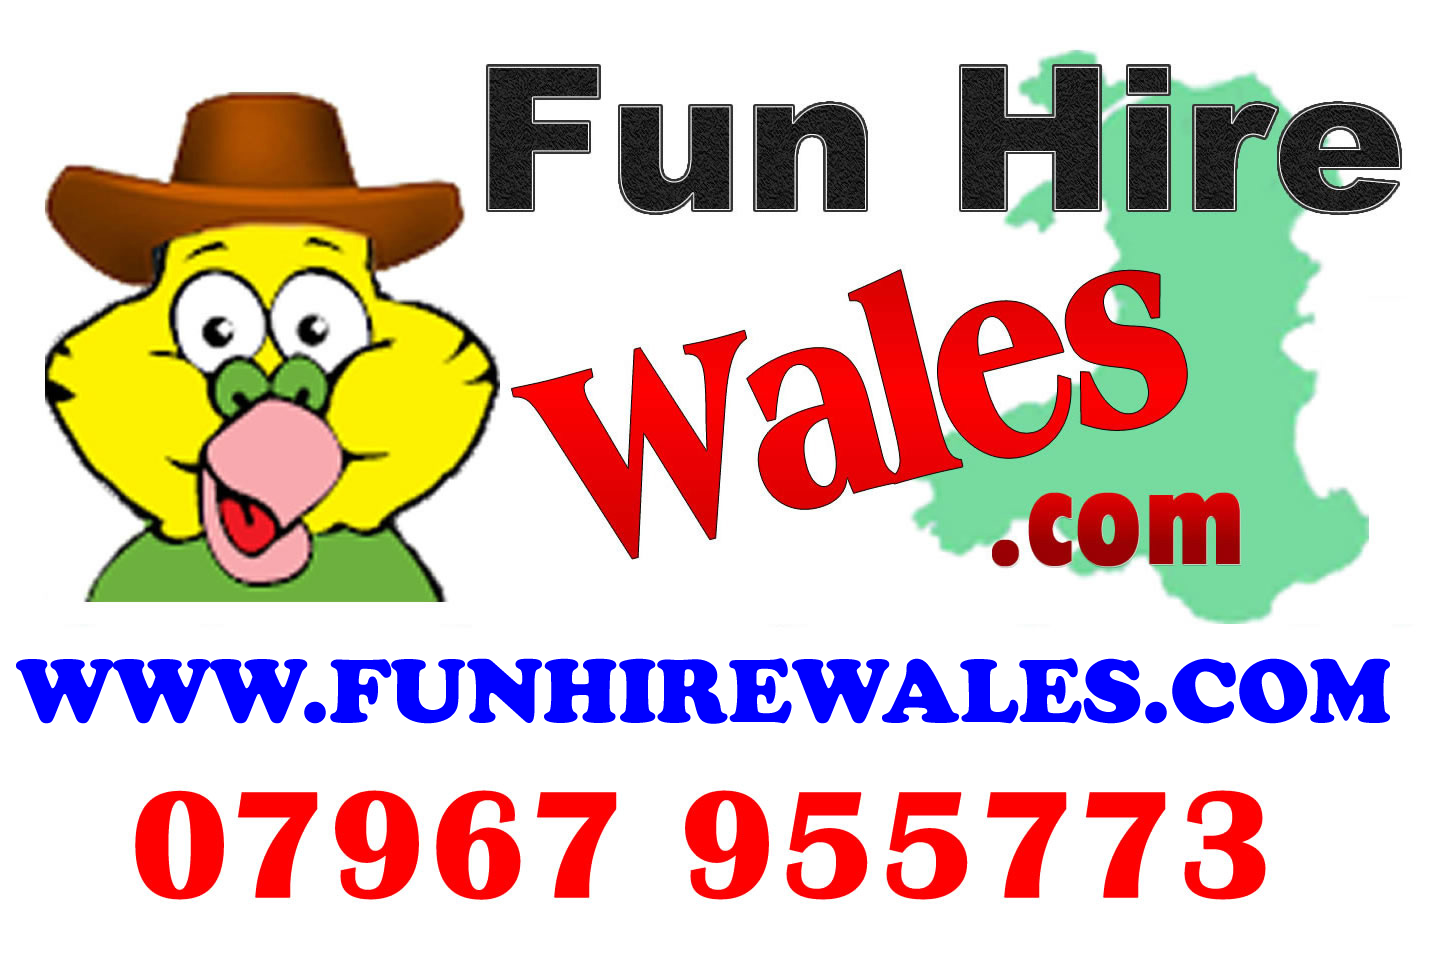 Fun Hire Wales